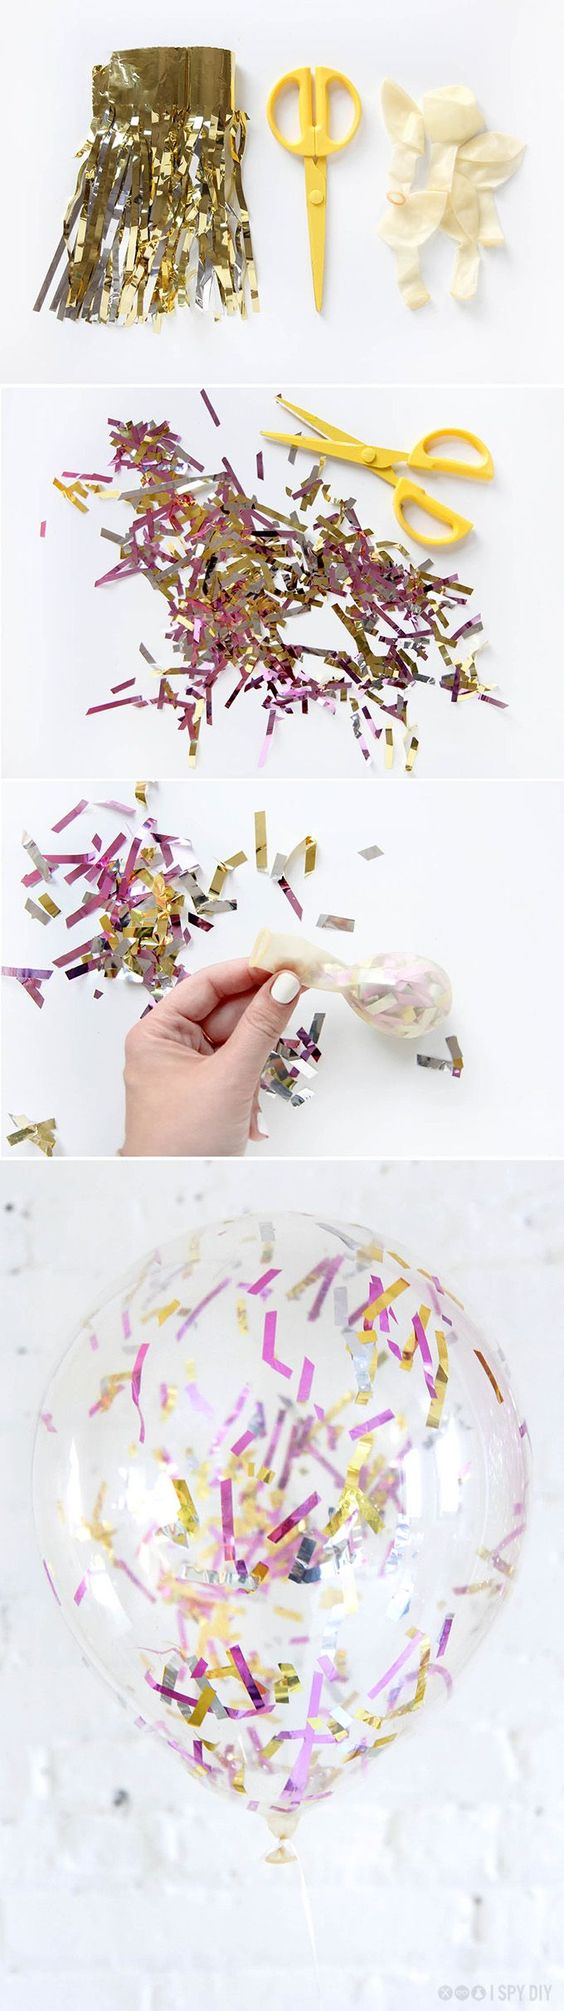 DIY Como hacer globos con confeti 